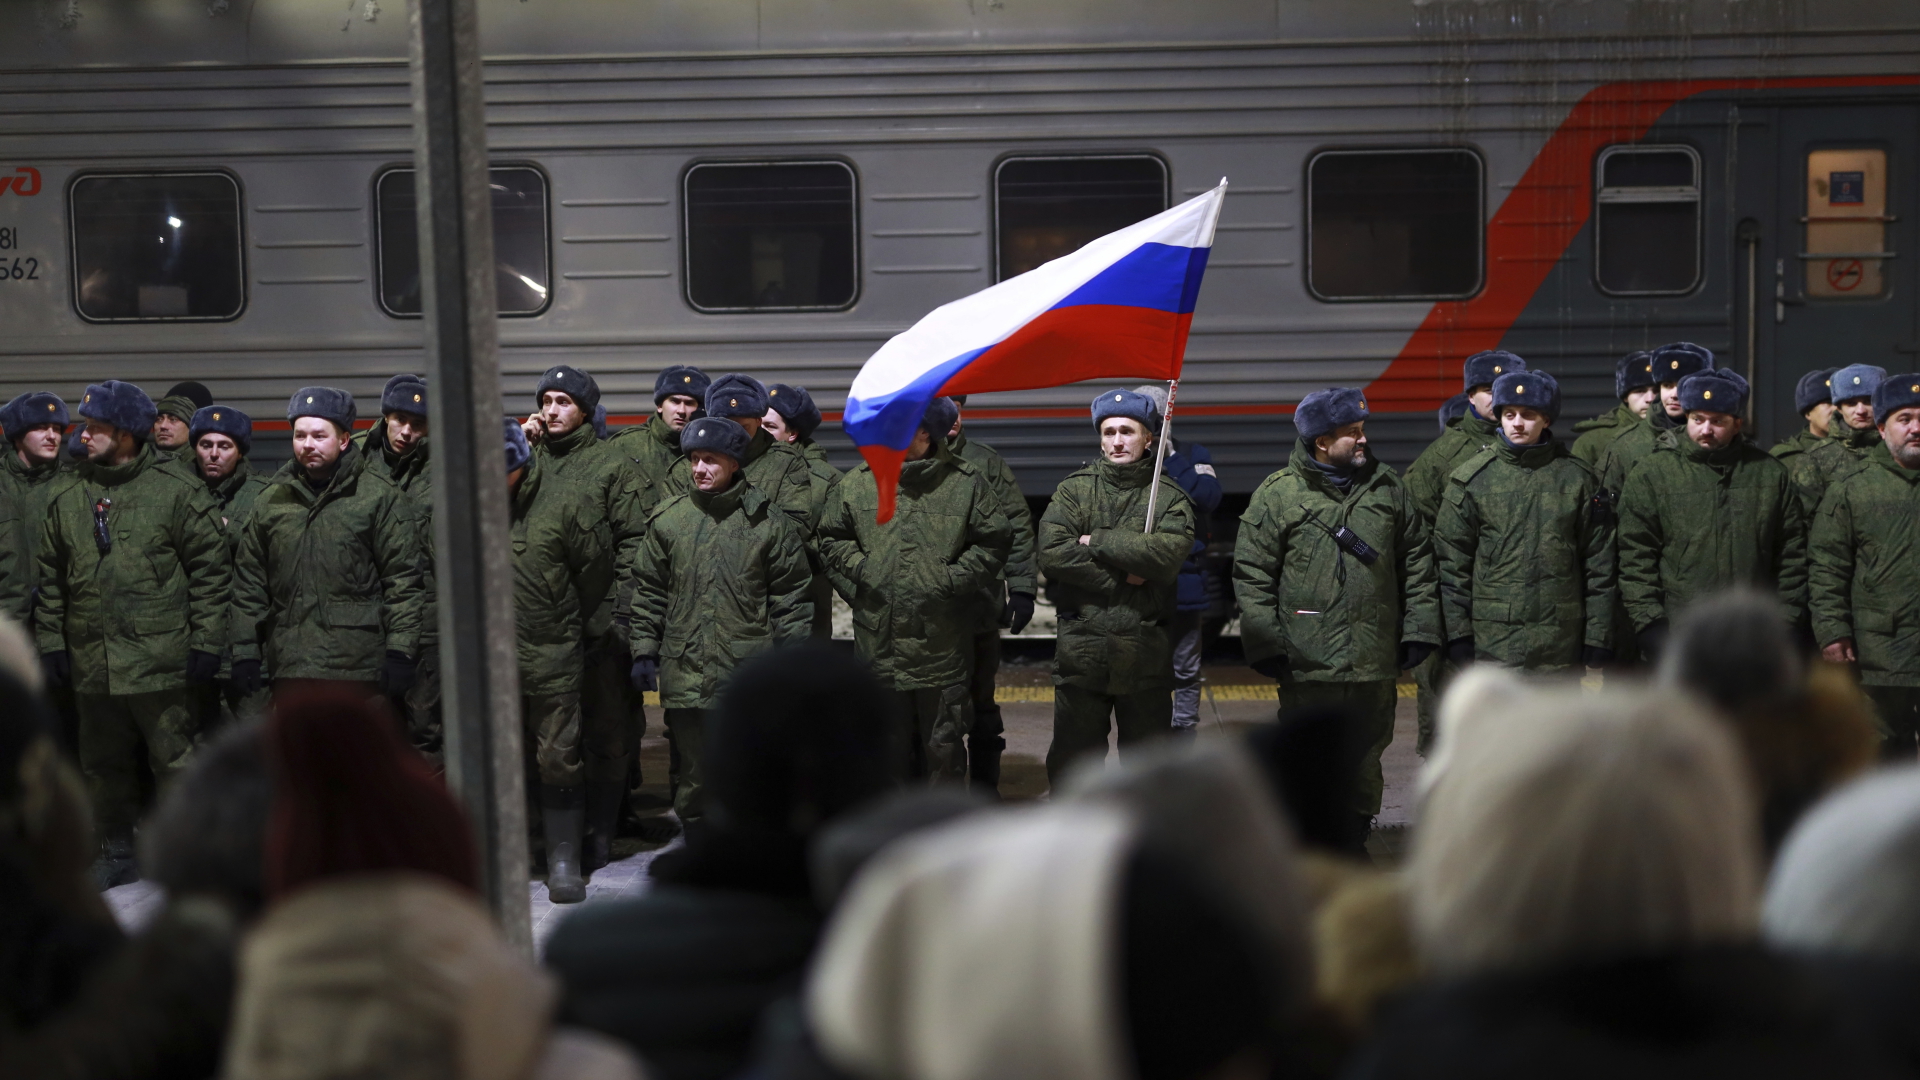 Soldaten, die kürzlich von Russland mobilisiert wurden, stehen bei einer Zeremonie vor dem Einsteigen in einen Zug auf einem Bahnhof.